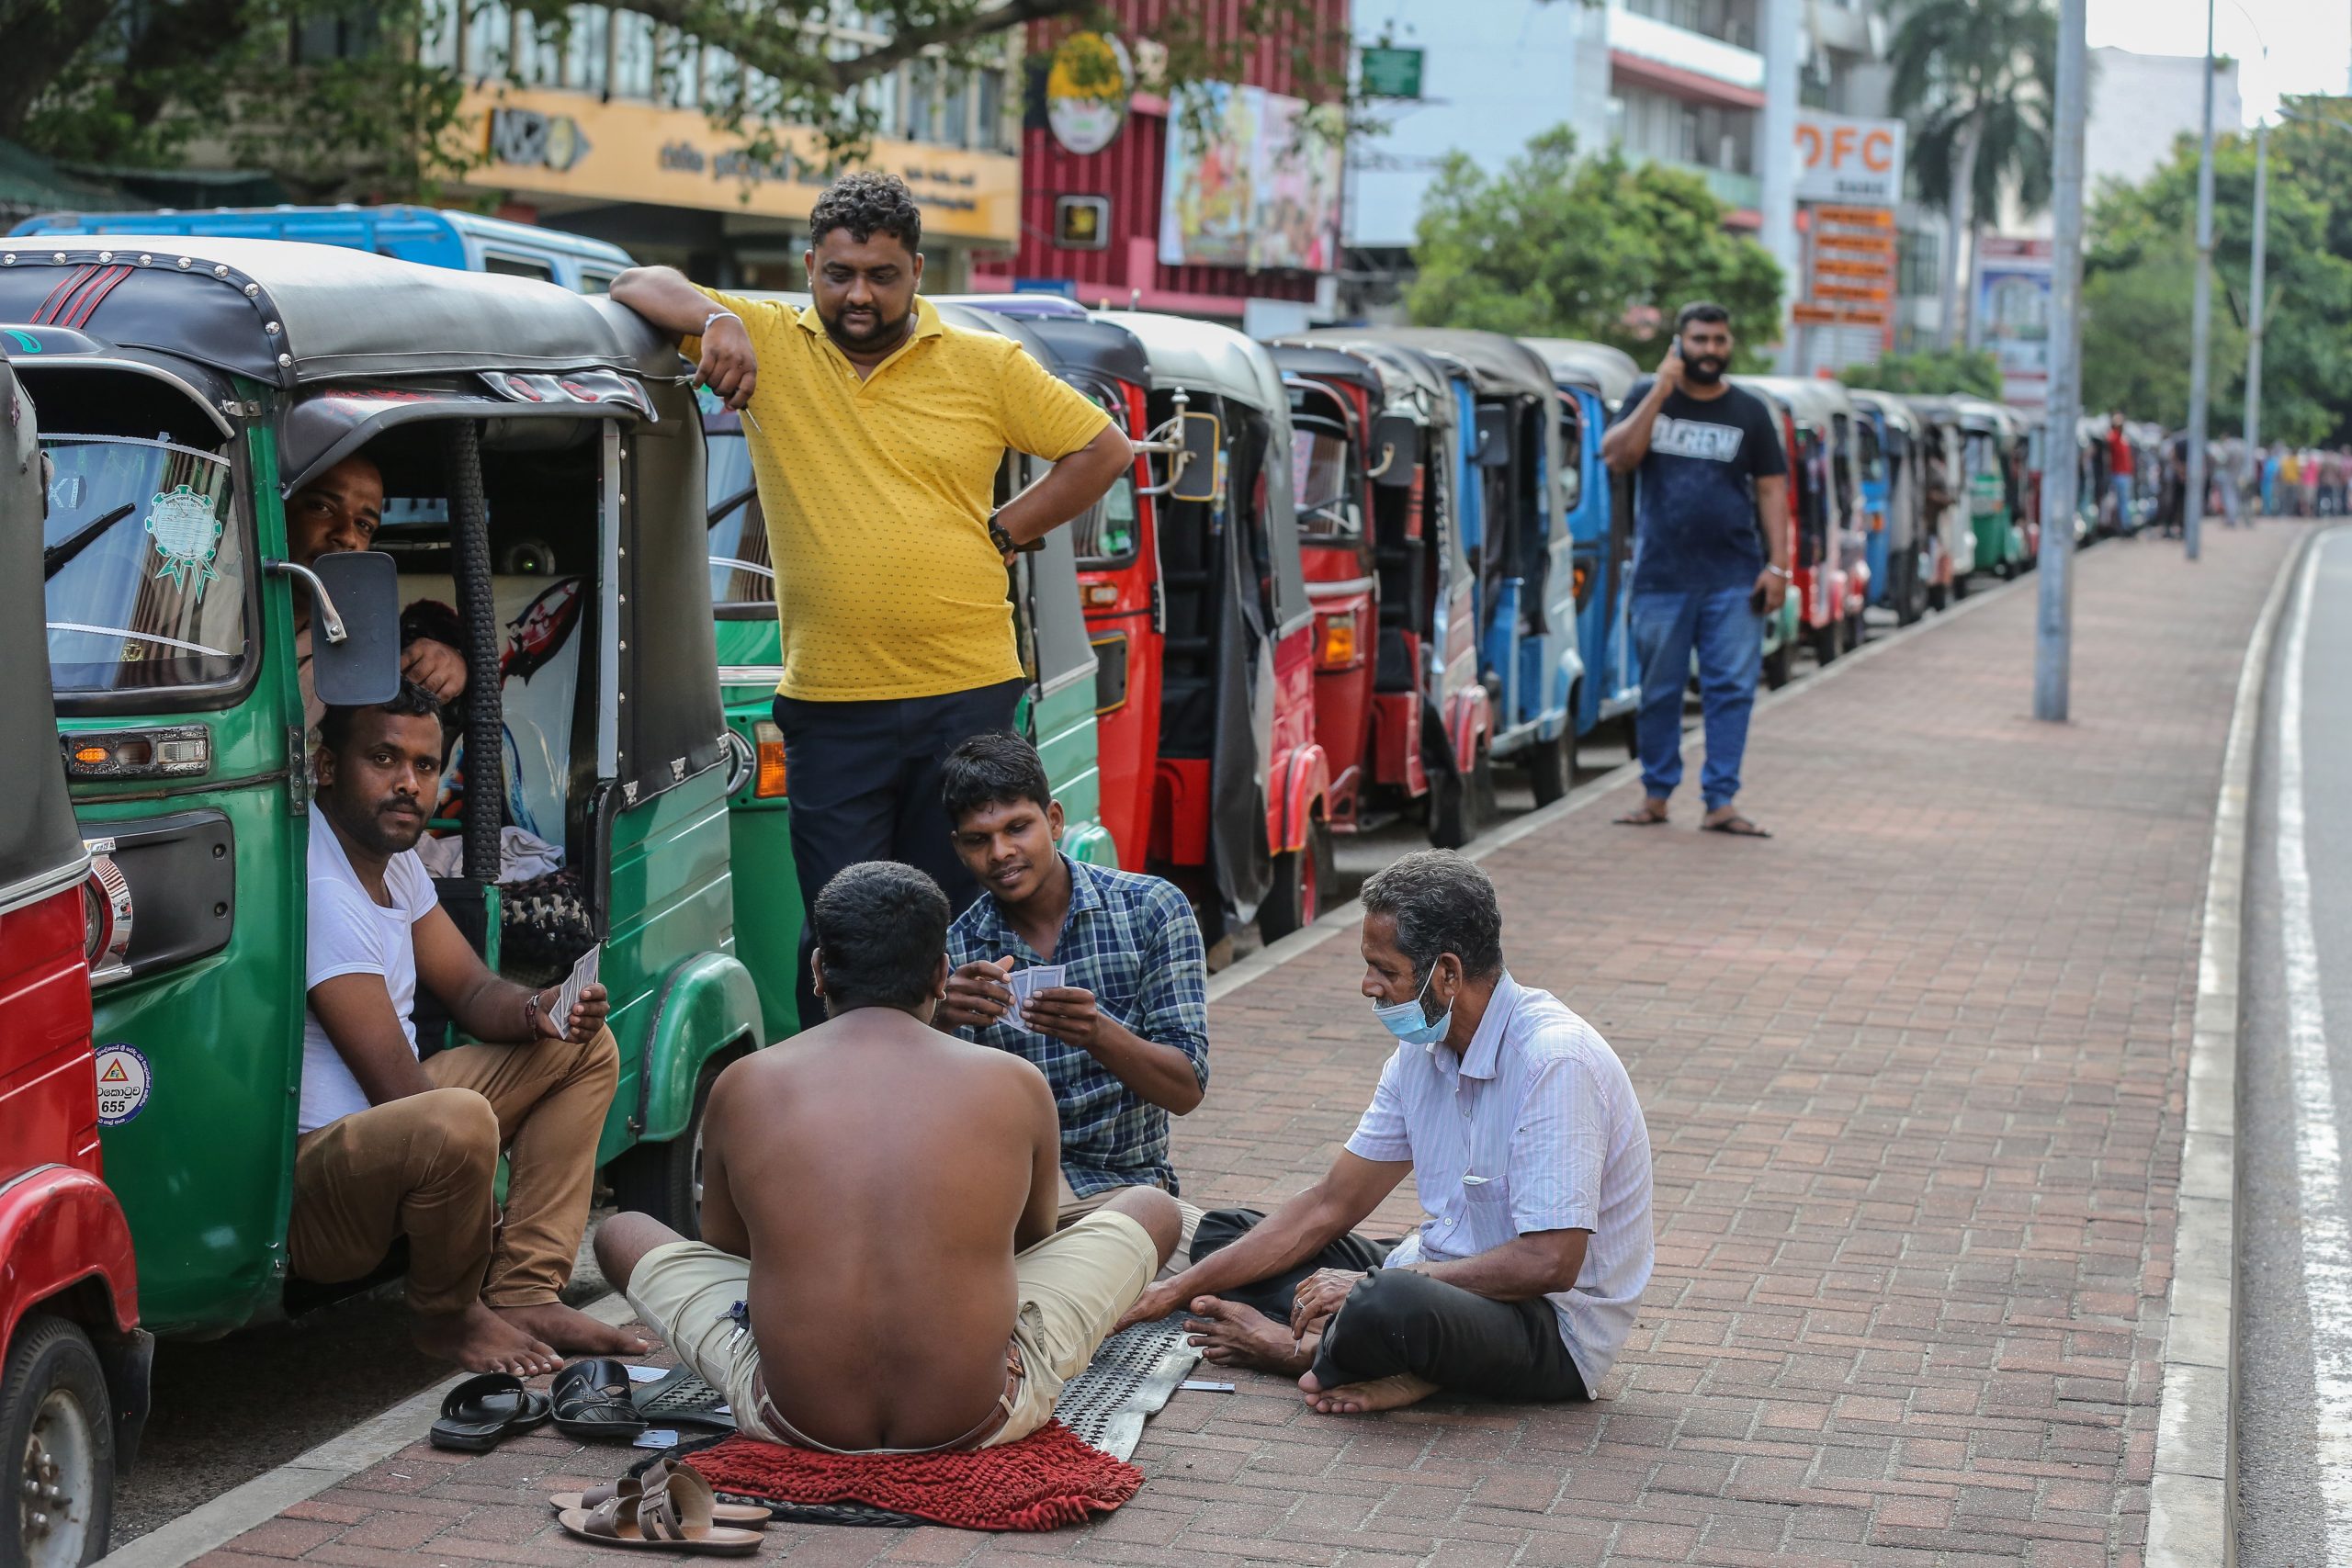 燃油短缺引暴动 斯里兰卡军警开枪平息骚乱